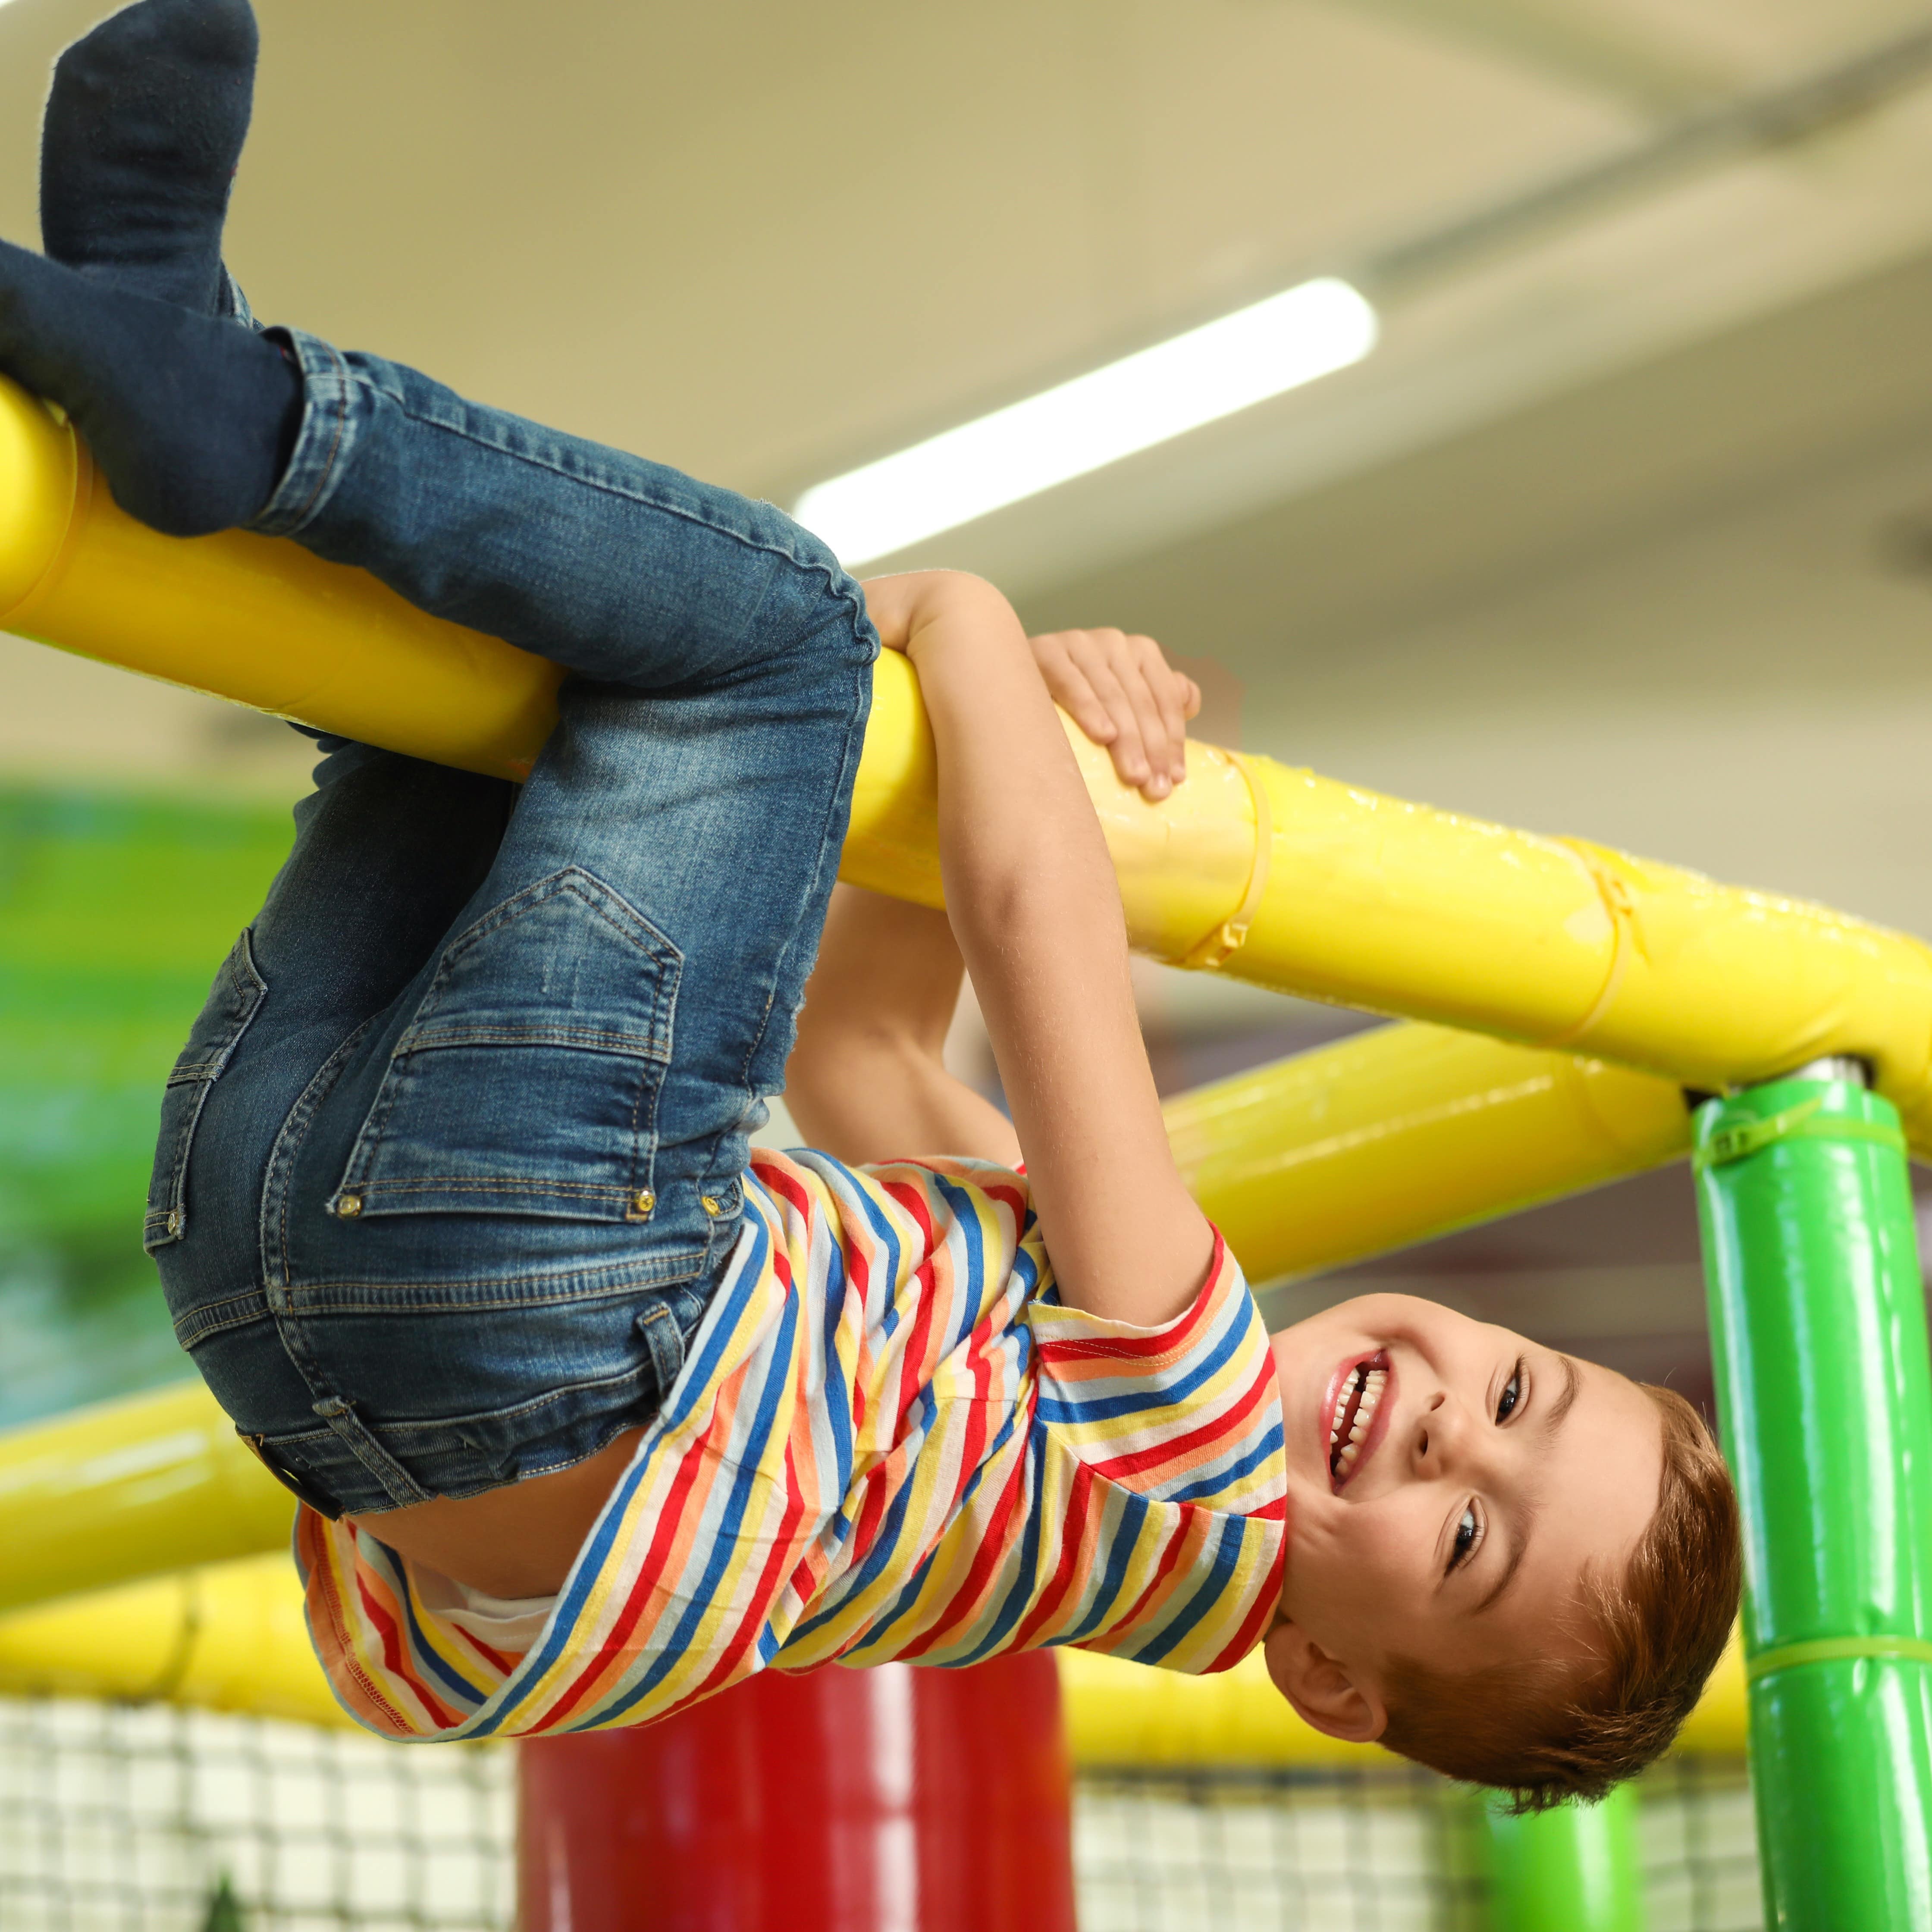 Junge in Jeans und buntem T-Shirt hängt an einem Klettergerüst im Indoor-Spielplatz.